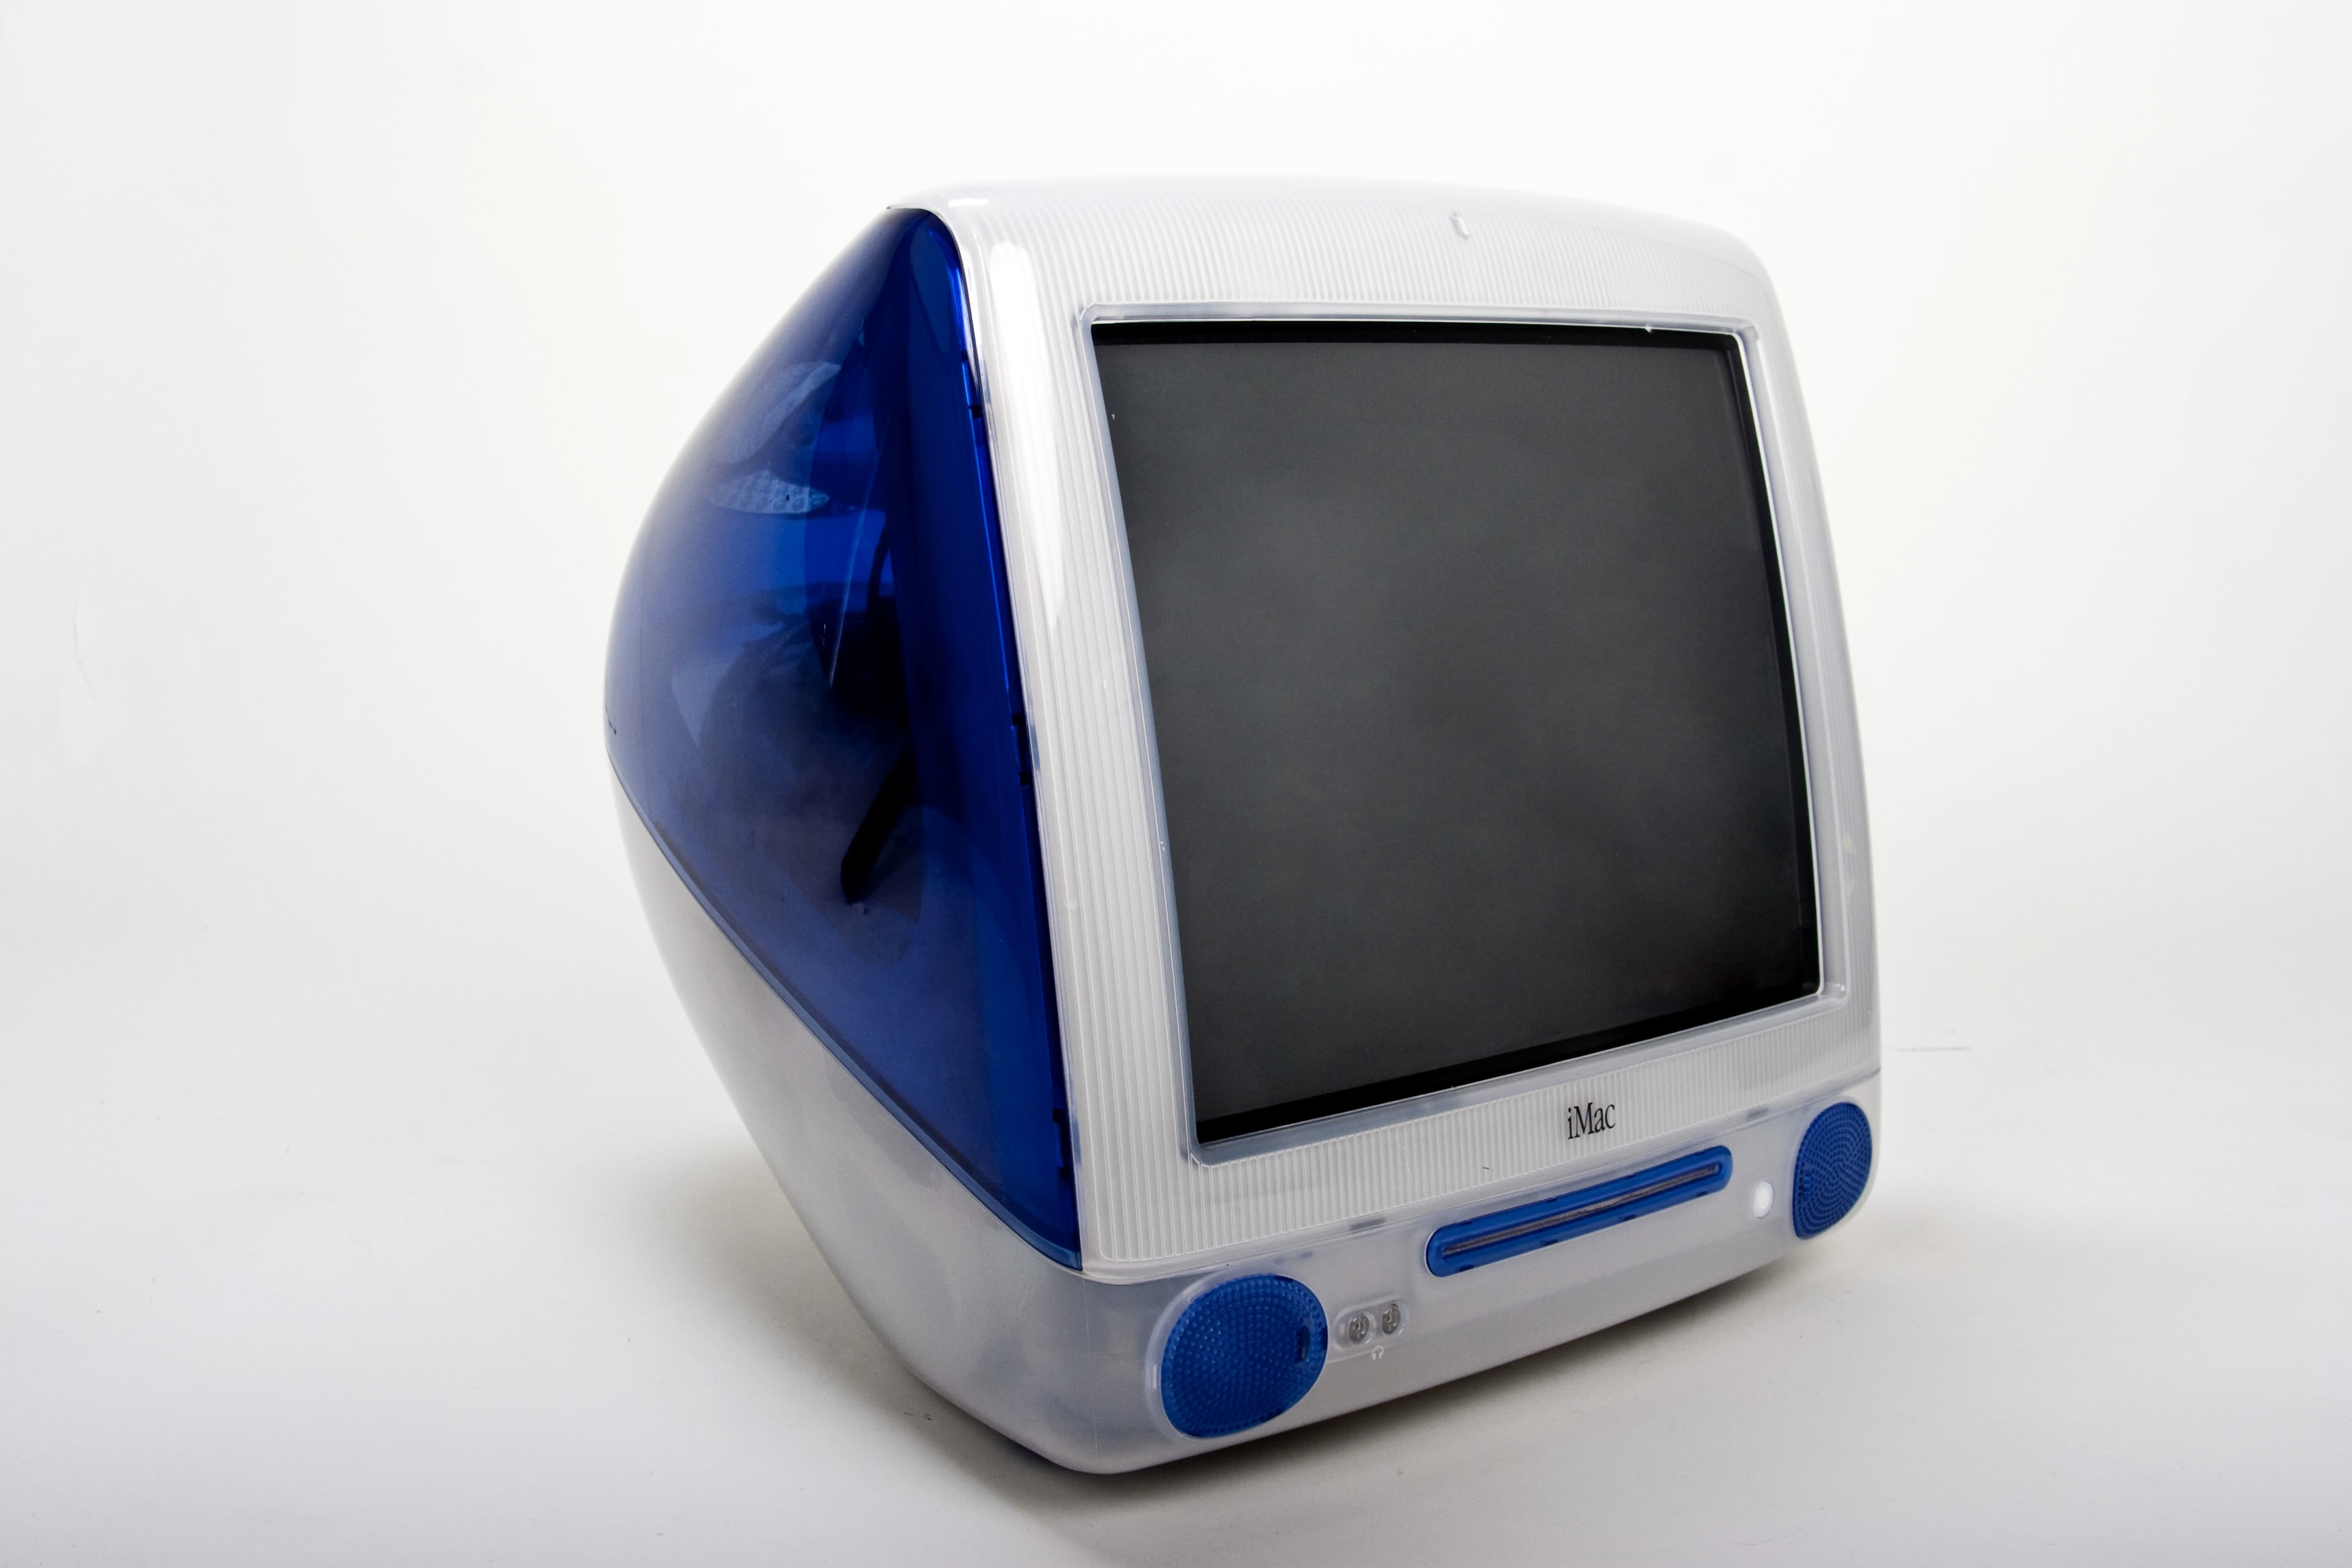 Originalni iMac, predstavljen 1998., drugo je najbitnije računalo u Appleovoj povijesti. Jobsu je nakon povratka u Apple trebao ogroman tržišni hit, kojim će Jobs morao dokazati da je on i dalje relevantan na sceni. Jobs je to naravno dokazao, a iMac je postao ogroman tržišni hit, koji je spasio Apple.
<br>
<br>
iMac je prvi puta da je Apple iskoristio (sada već legendarni) "i" brending kao prvo slovo imena svojih uređaja, koji je kasnije ubačen u uređaje poput iPoda, iPhonea i iPada. iMac je također prvo računalo koje je prihvatilo USB standard, što je tada, bila iznimno kritizirana odluka. Međutim, ta odluka je imala ogroman utjecaj na industriju, te ustvari utabala put za USB standard kojeg znamo danas.